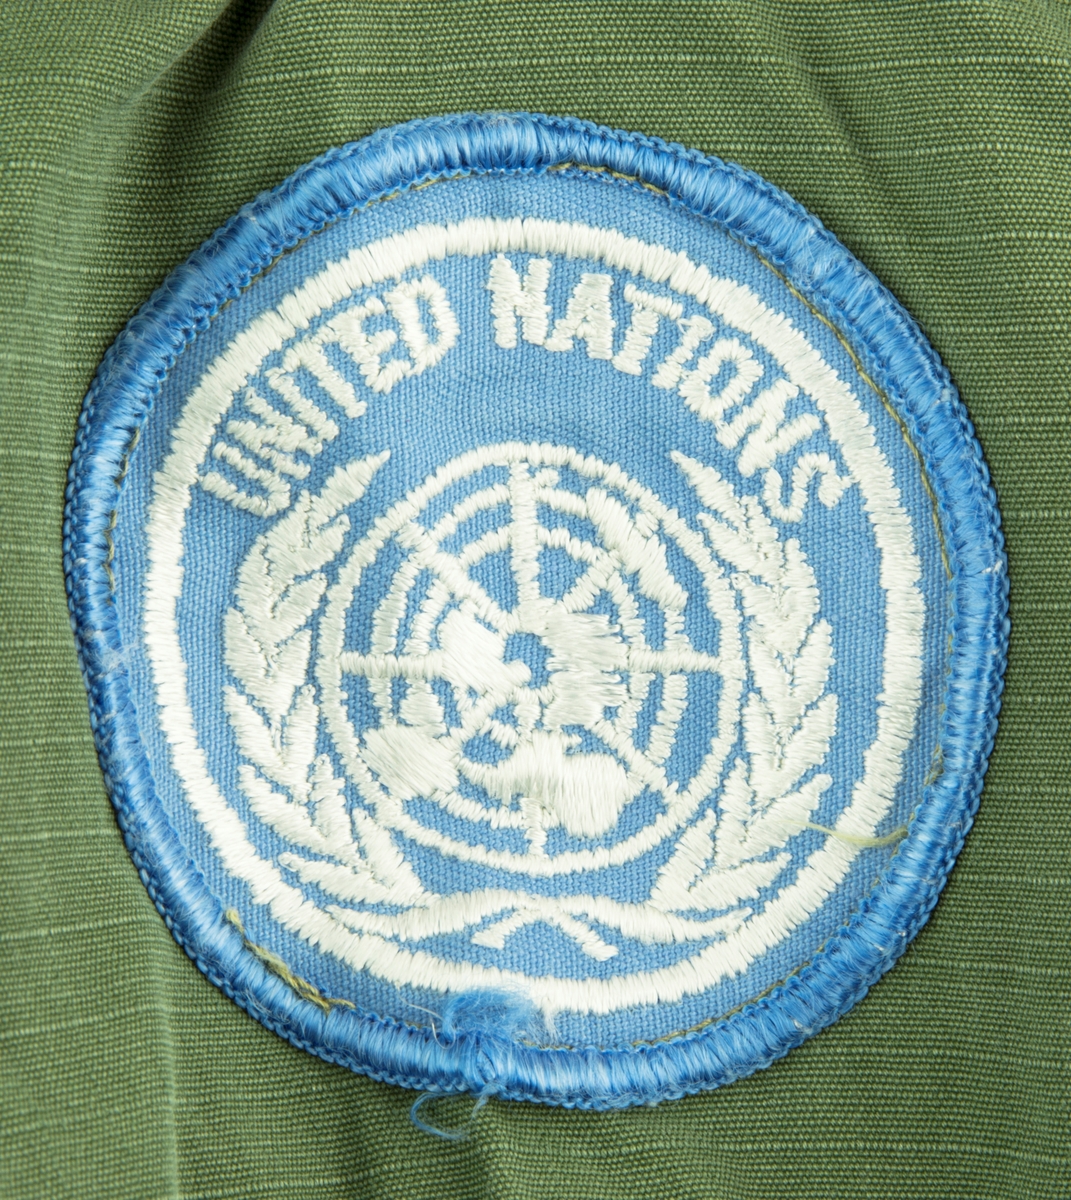 Vapenrock av modell m/61.  Vapenrocken är militärgrön och brukad vid FN-tjänst. Två bröstfickor fram med dold knäppning. Dold knäppning fram med synlig övre knapp vid halsringning. Slejf på vardera axel för axelklaffhylsor. På vänster axel (framifrån) sitter ett ljusblått tygmärke med FN logga, på höger axel sitter ett tygmärke med Svensk vapensköld och texten "SWEDEN" i gult. Storlek Medium/Regular.